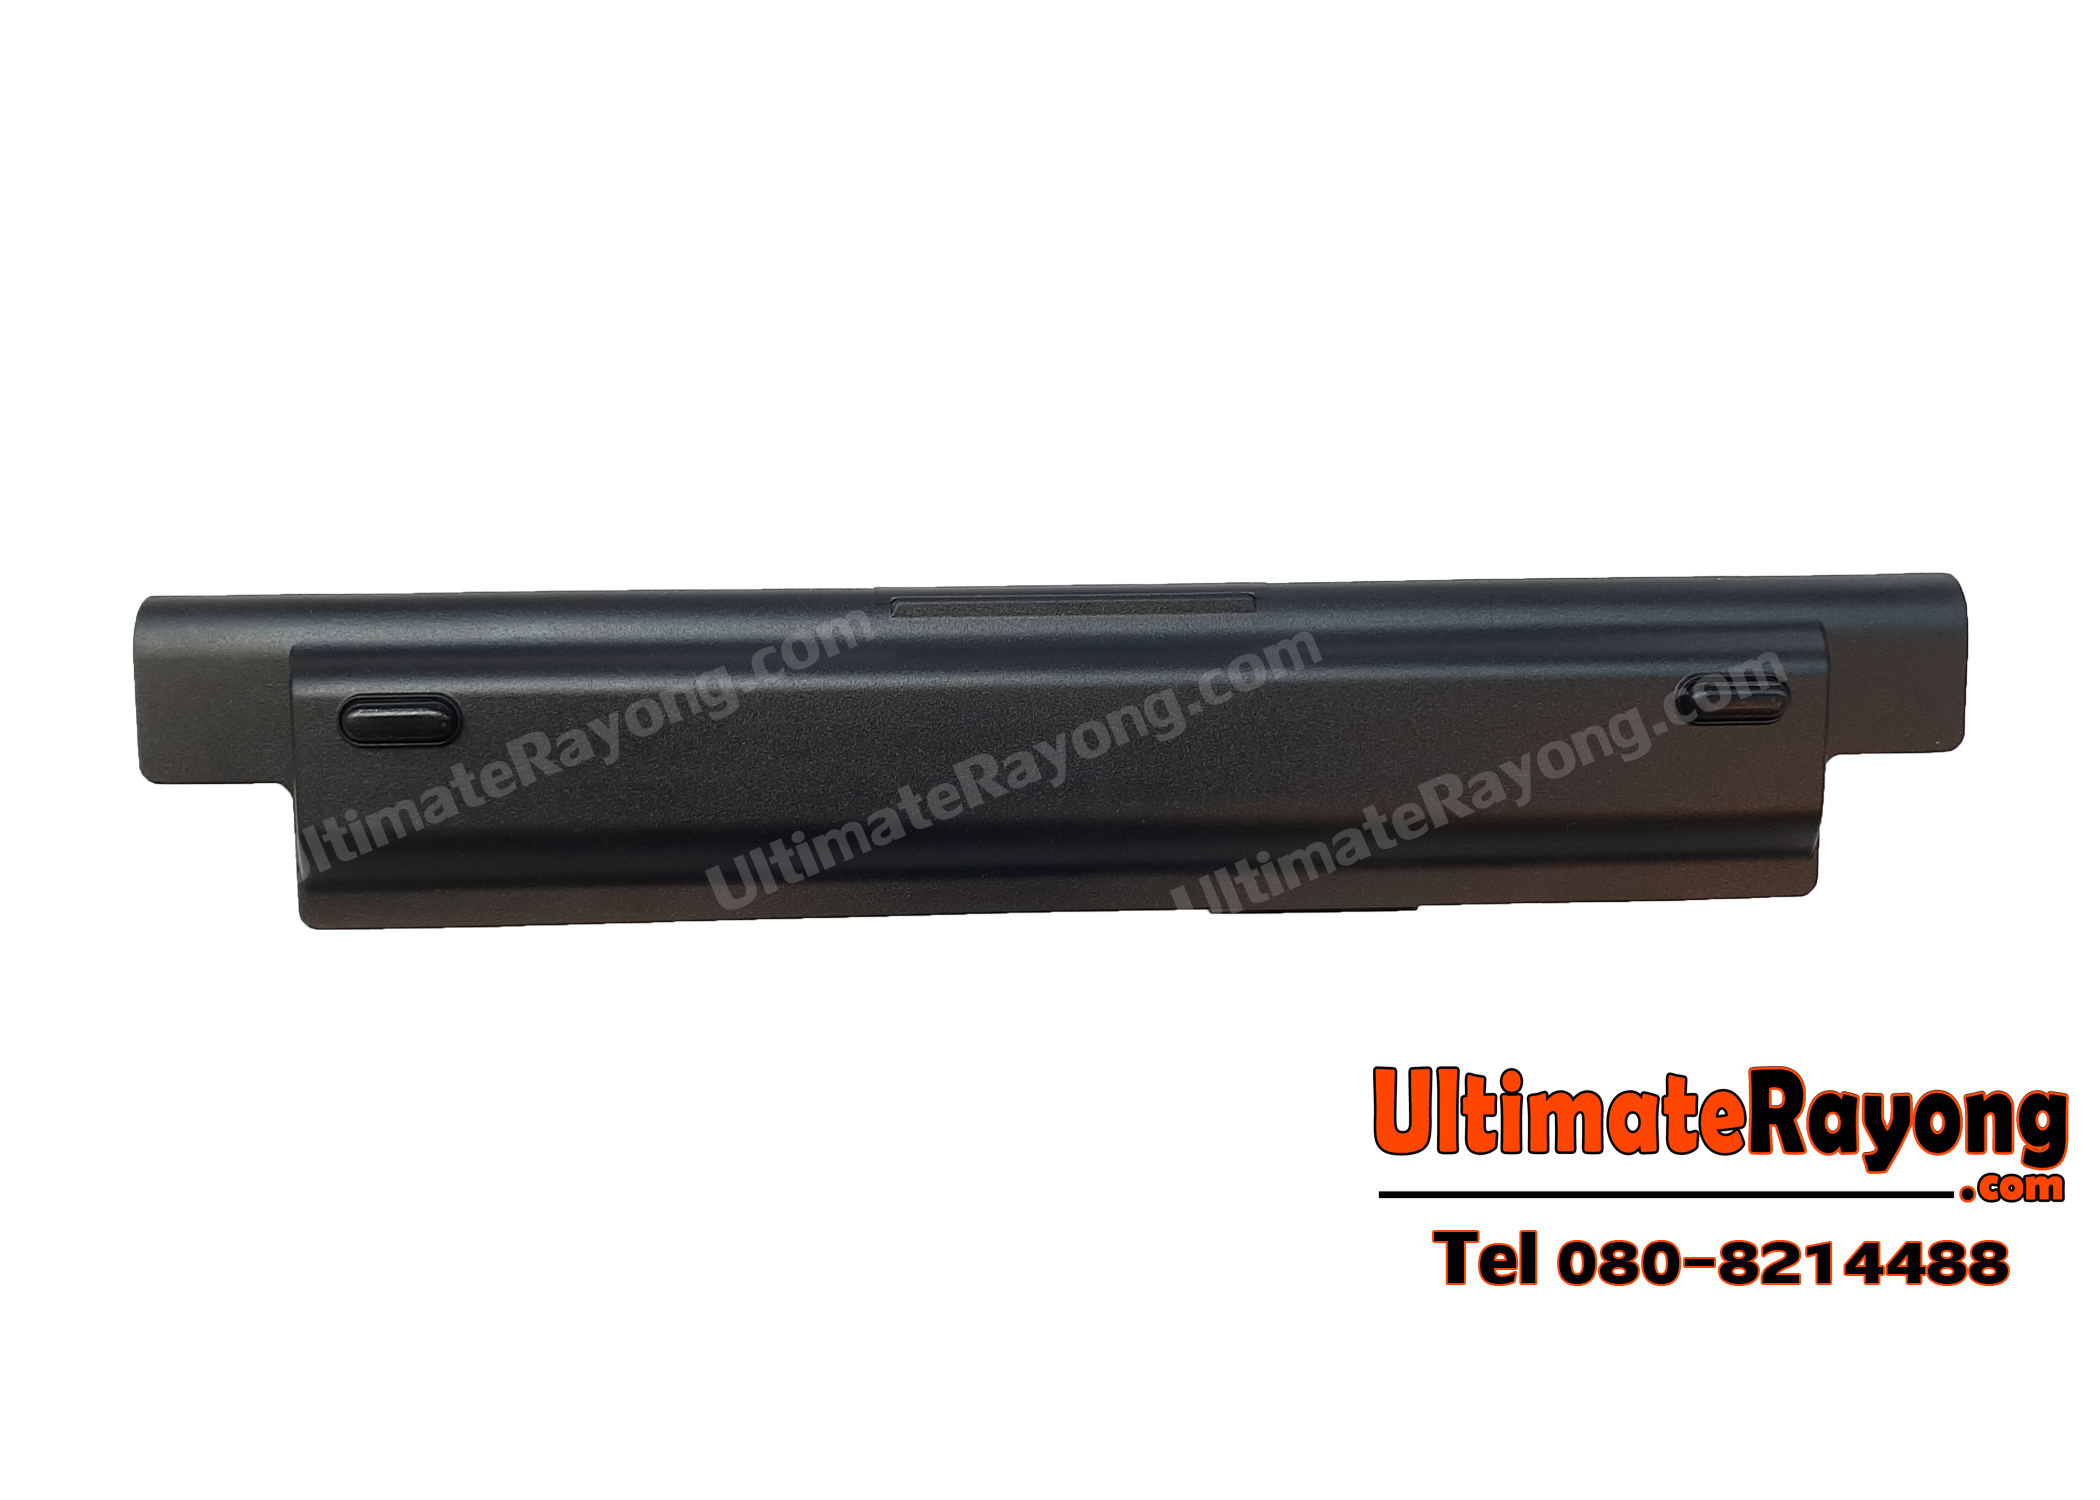 Battery Dell Inspiron 14 Series 3421 G019Y 11.1V-4400mAh Black